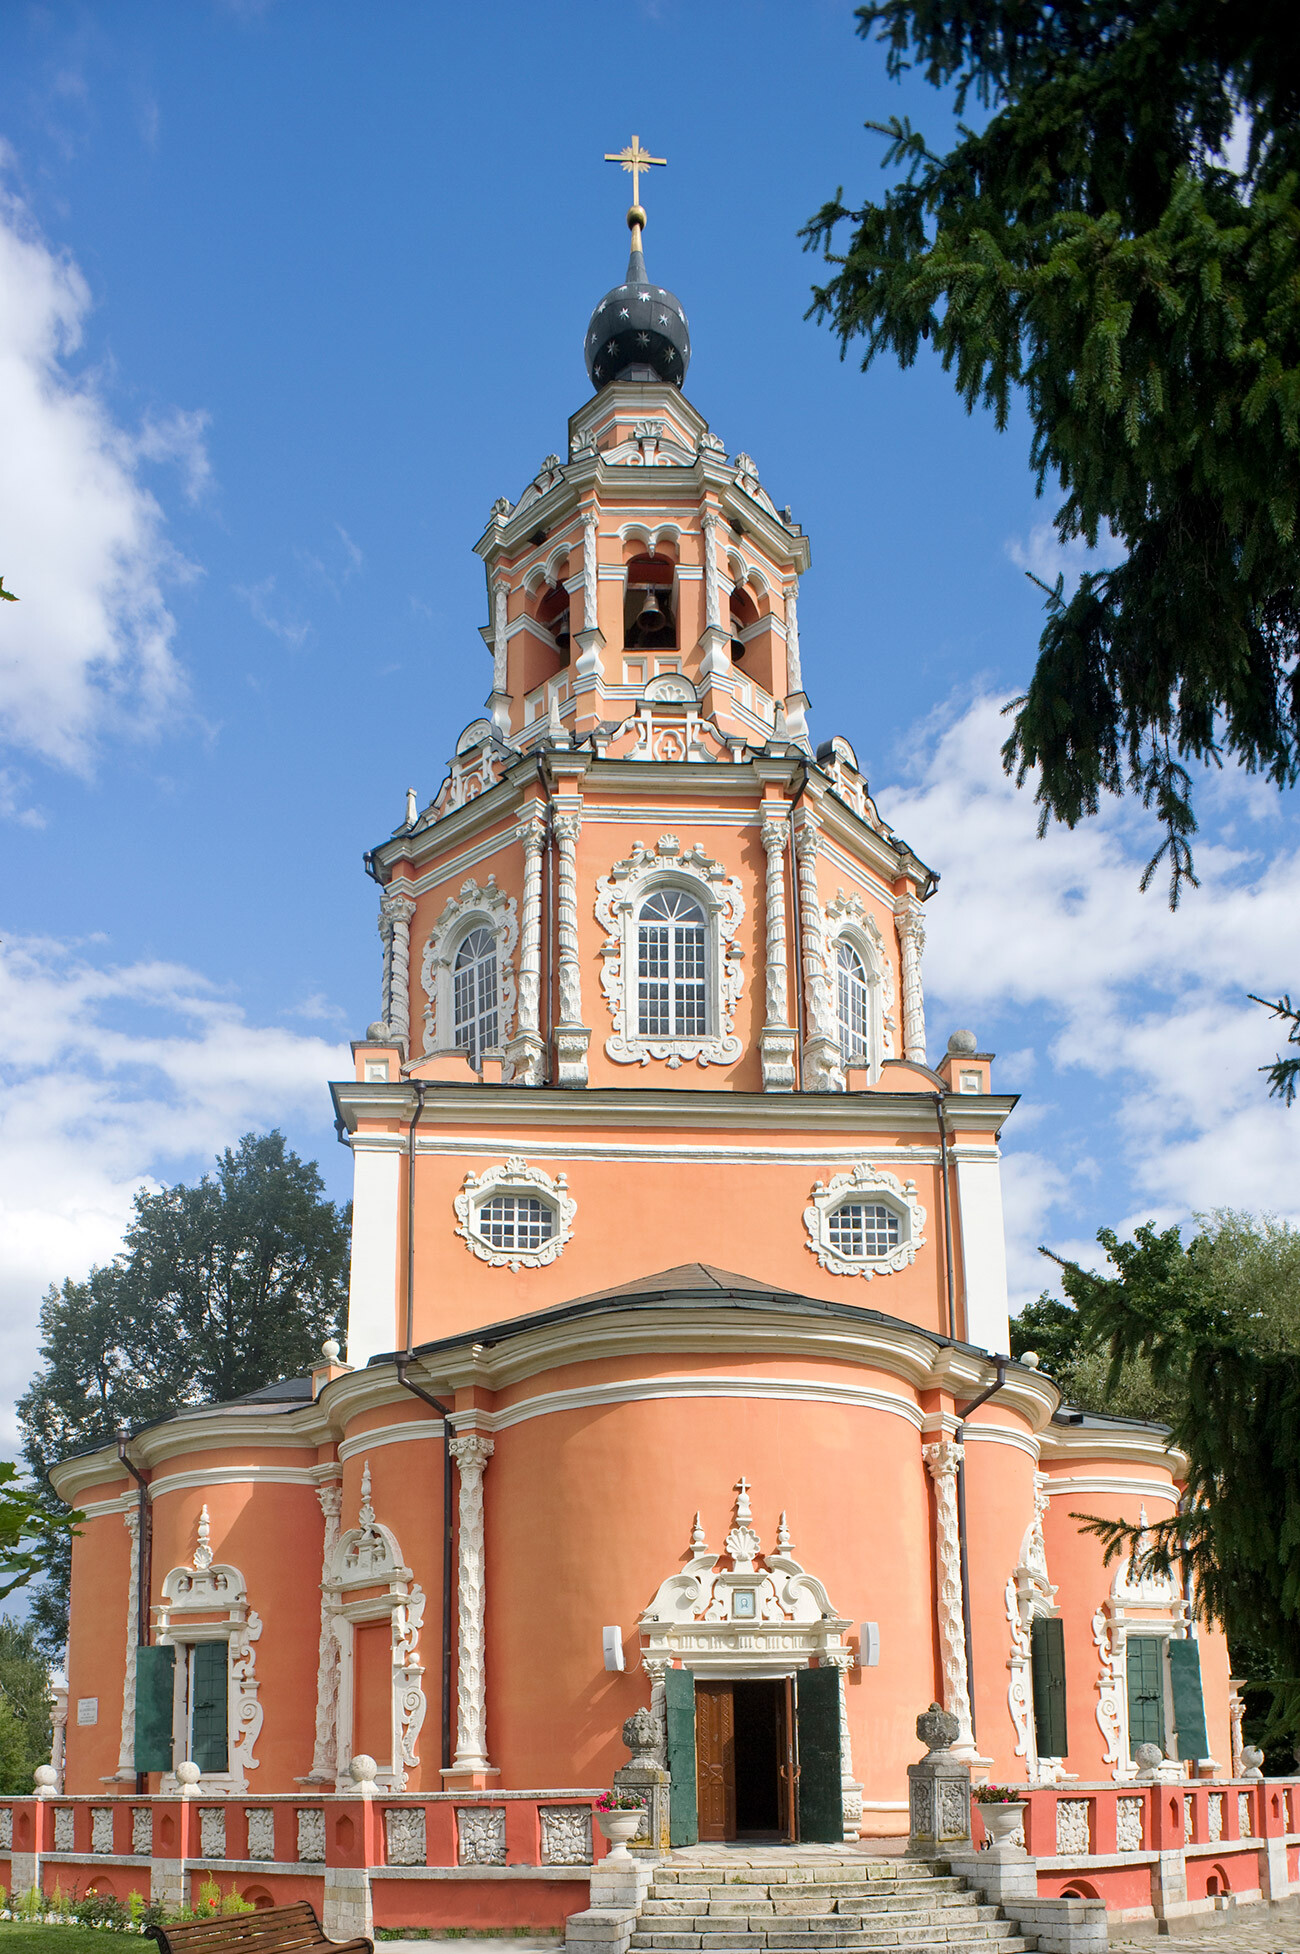 Ubory (45 chilometri a ovest di Mosca). Chiesa dell’Icona Miracolosa del Salvatore, lato ovest. 16 agosto 2013
